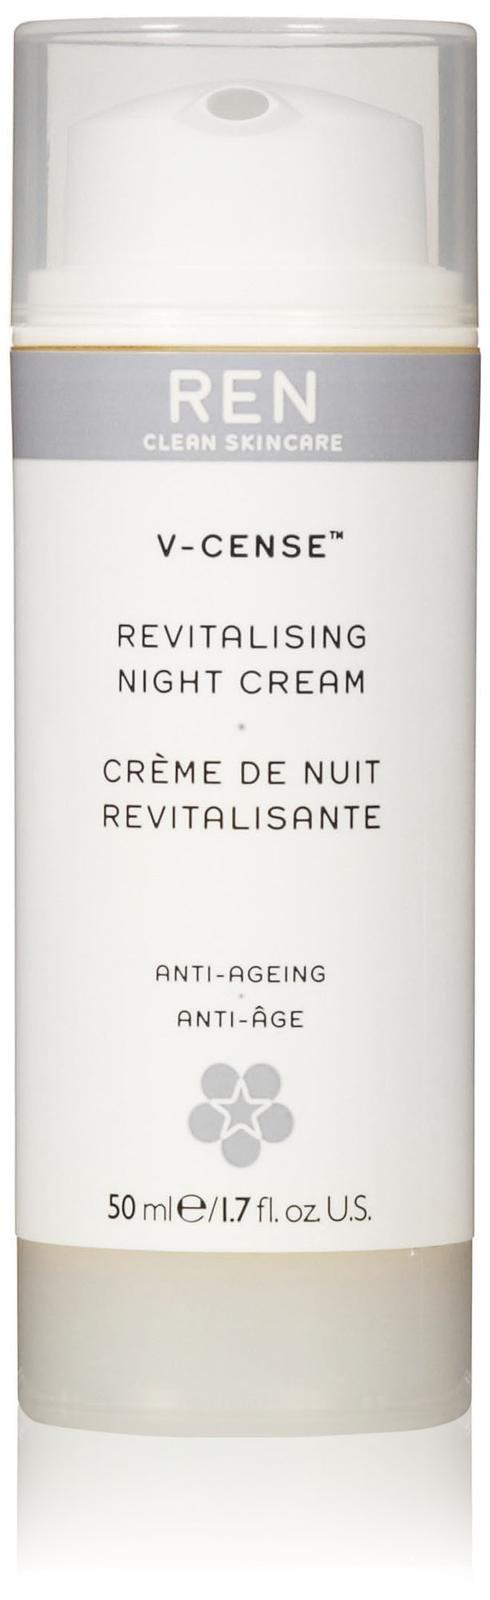 Ren V-cense Revitalizing Night Cream